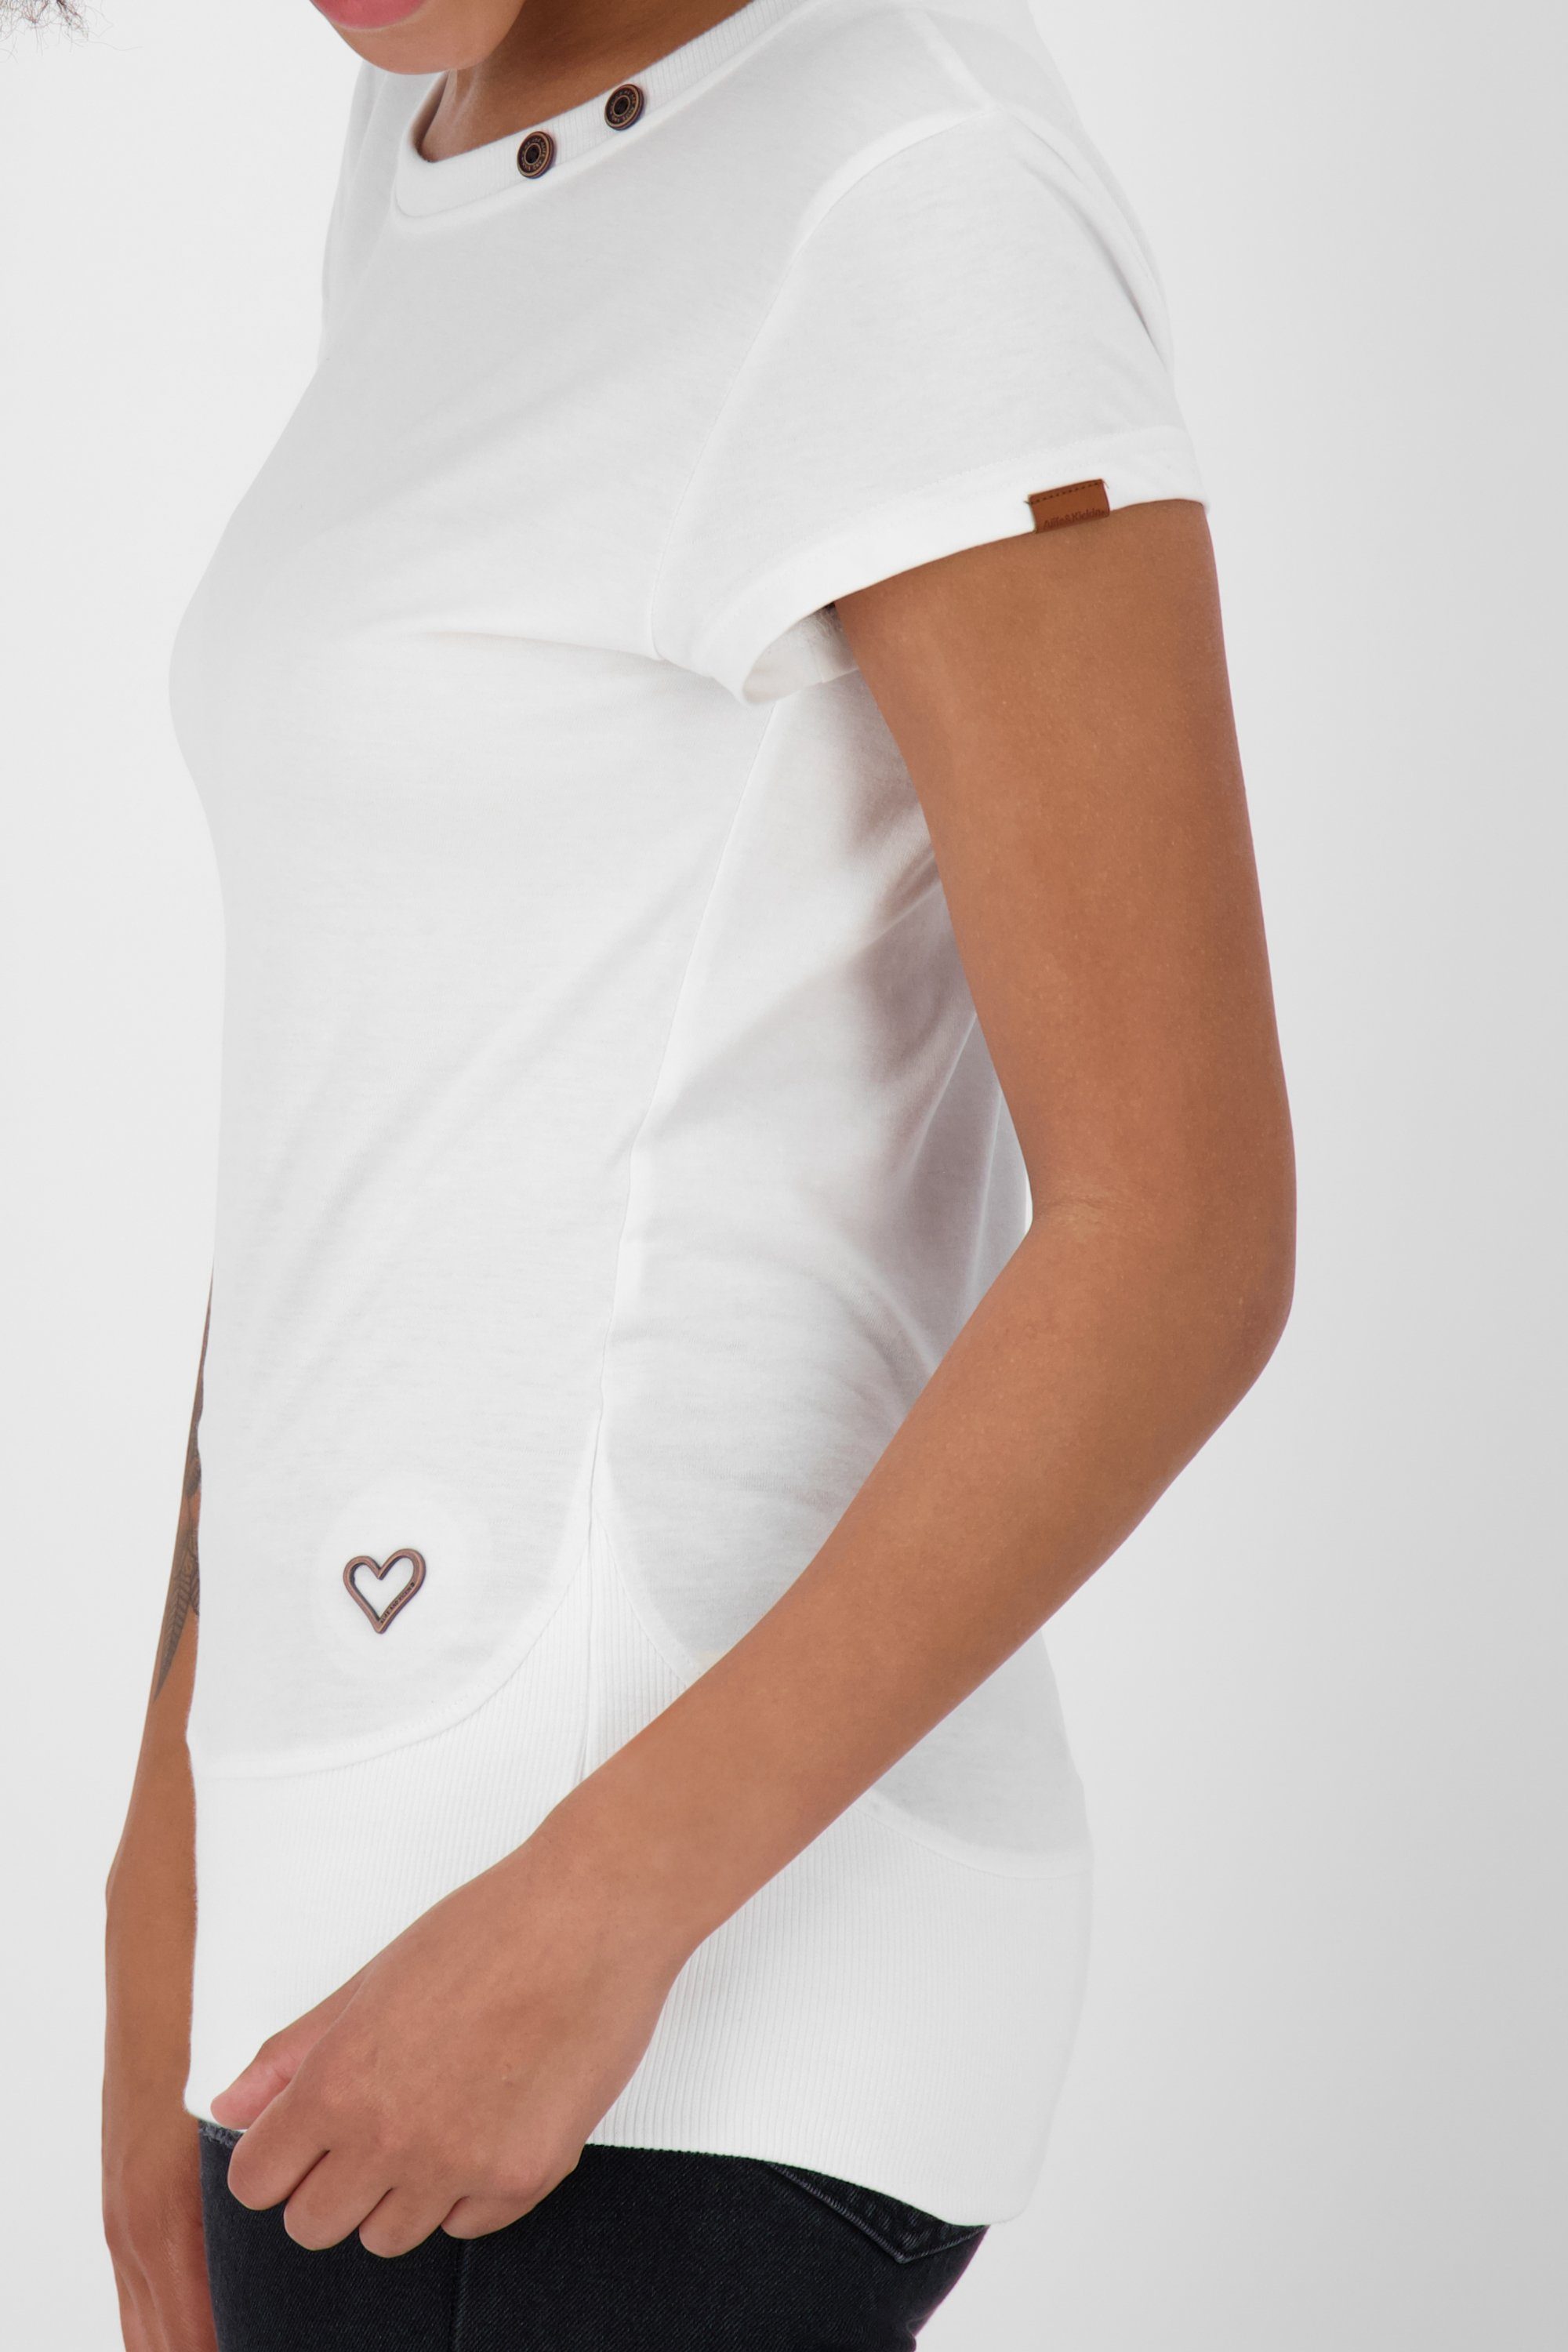 Damen Alife white Shirt & CocoAK Kickin A T-Shirt T-Shirt